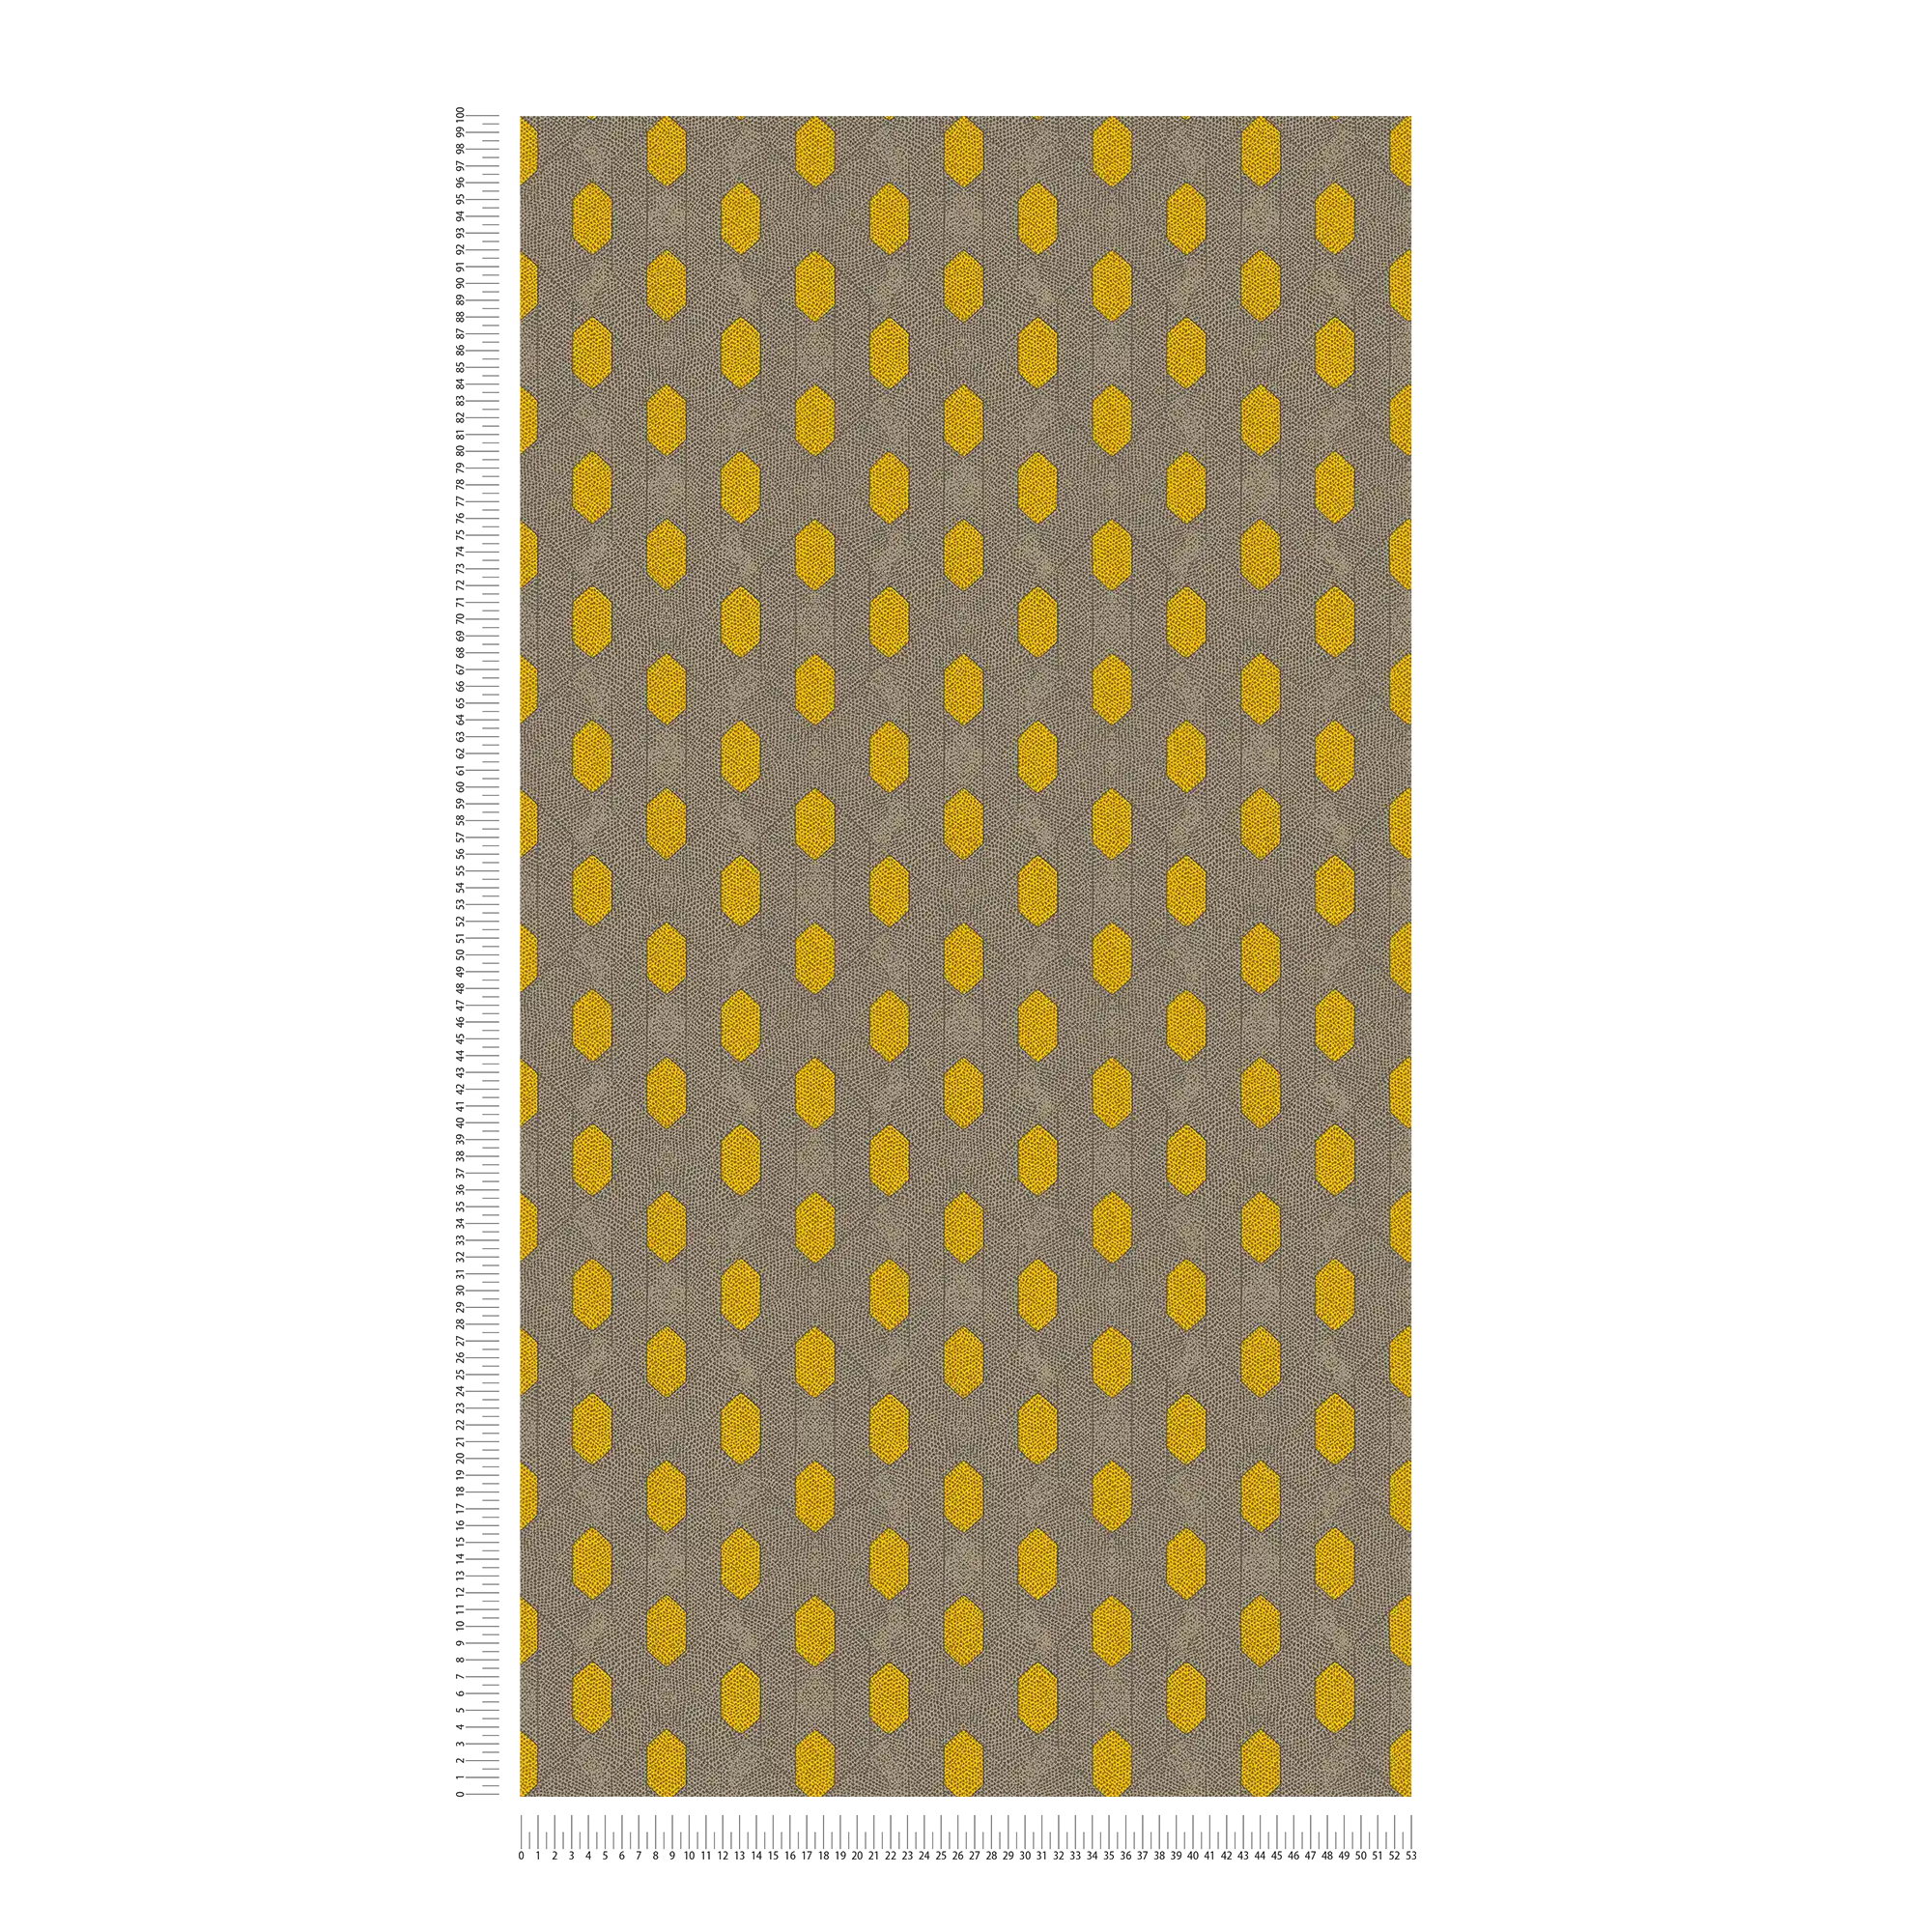             Vliesbehang met geometrisch stippenpatroon - geel, grijs, bruin
        